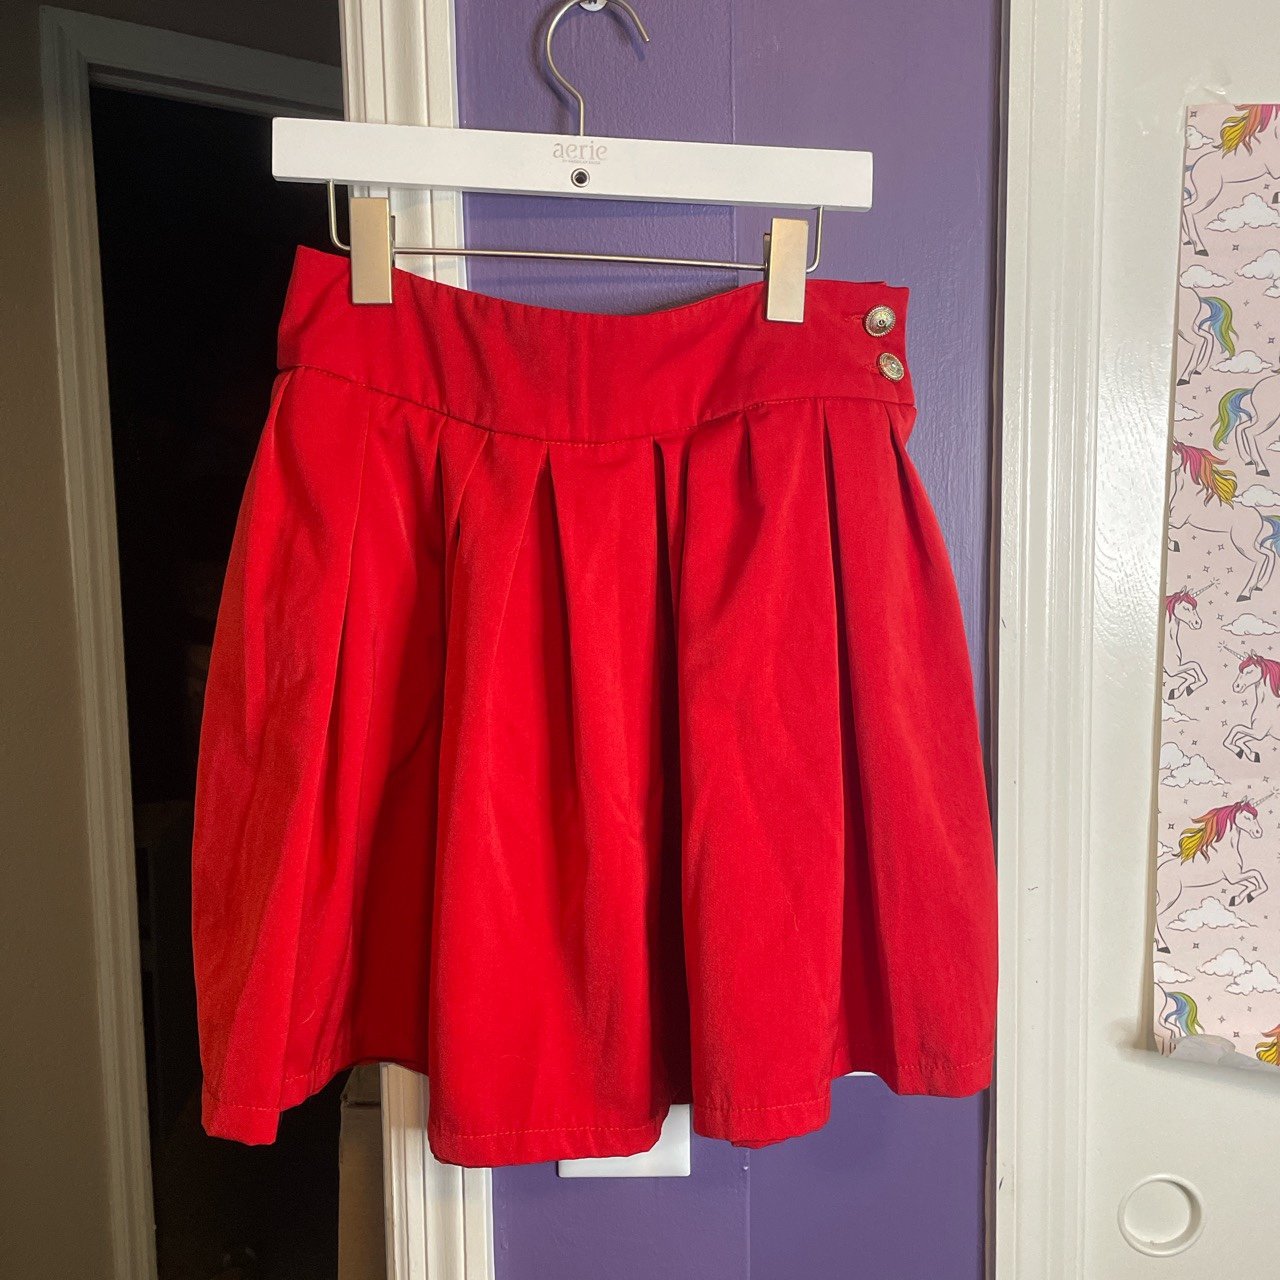 Fashion Red Pleated Skirt JkZirOV0w Novel 